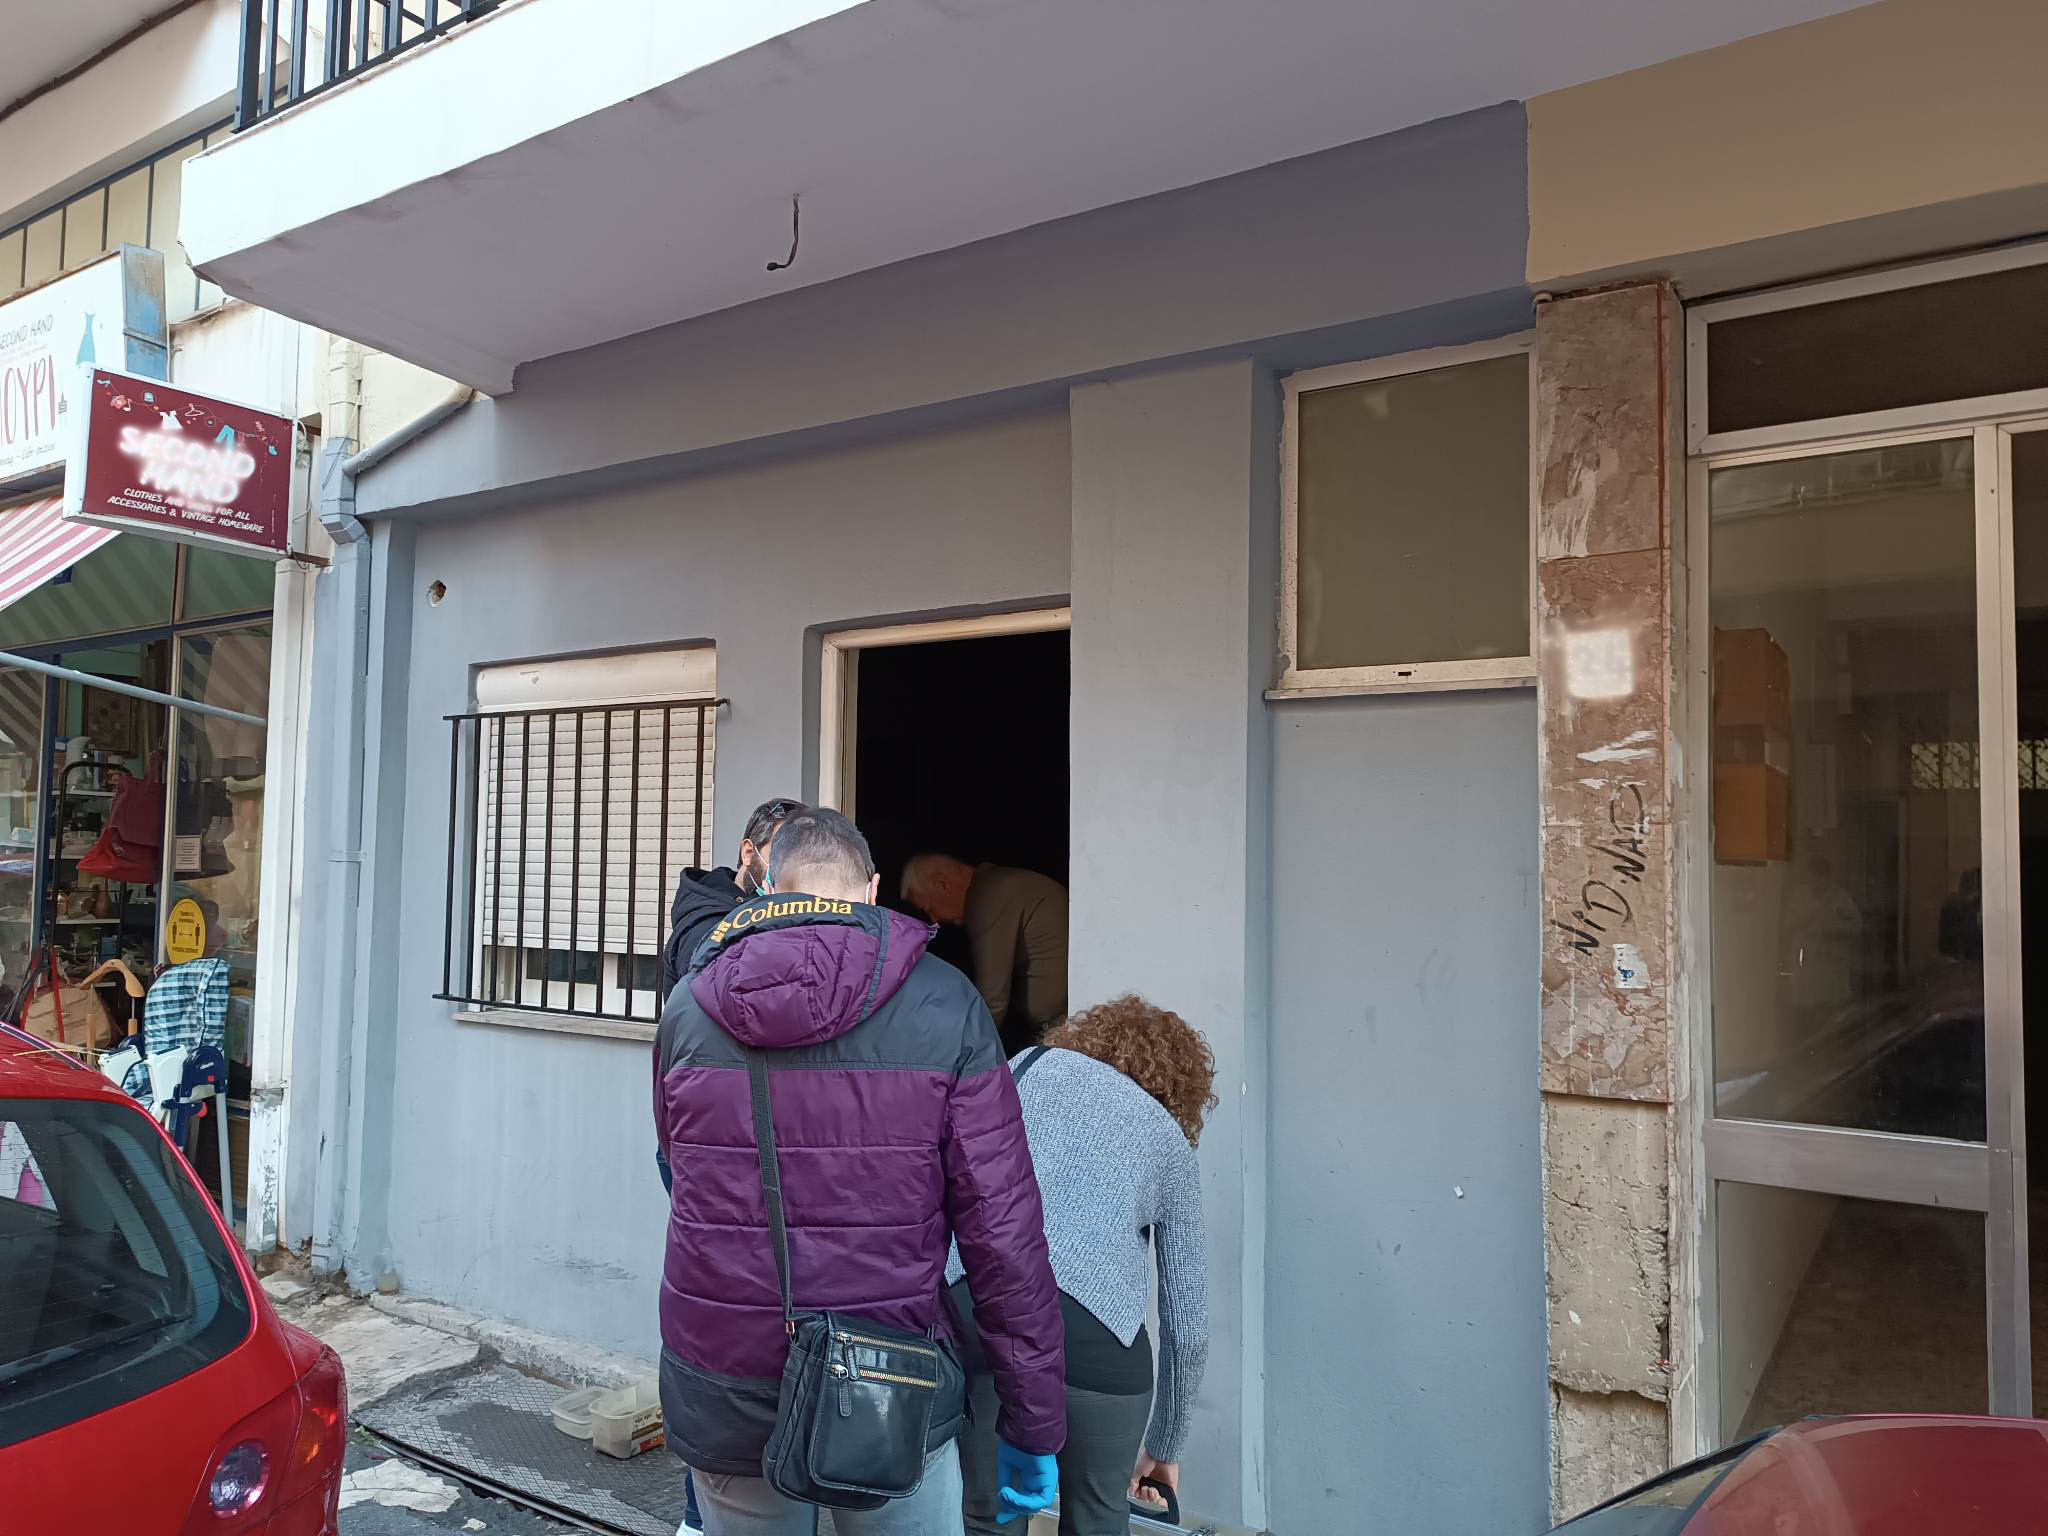 Χανιά:  Δύο Γεωργιανοί ηλικίας 48 και 18 ετών ξυλοκόπησαν και έπνιξαν τον  53χρονο  Έλληνα  – Τους αναζητά η αστυνομία